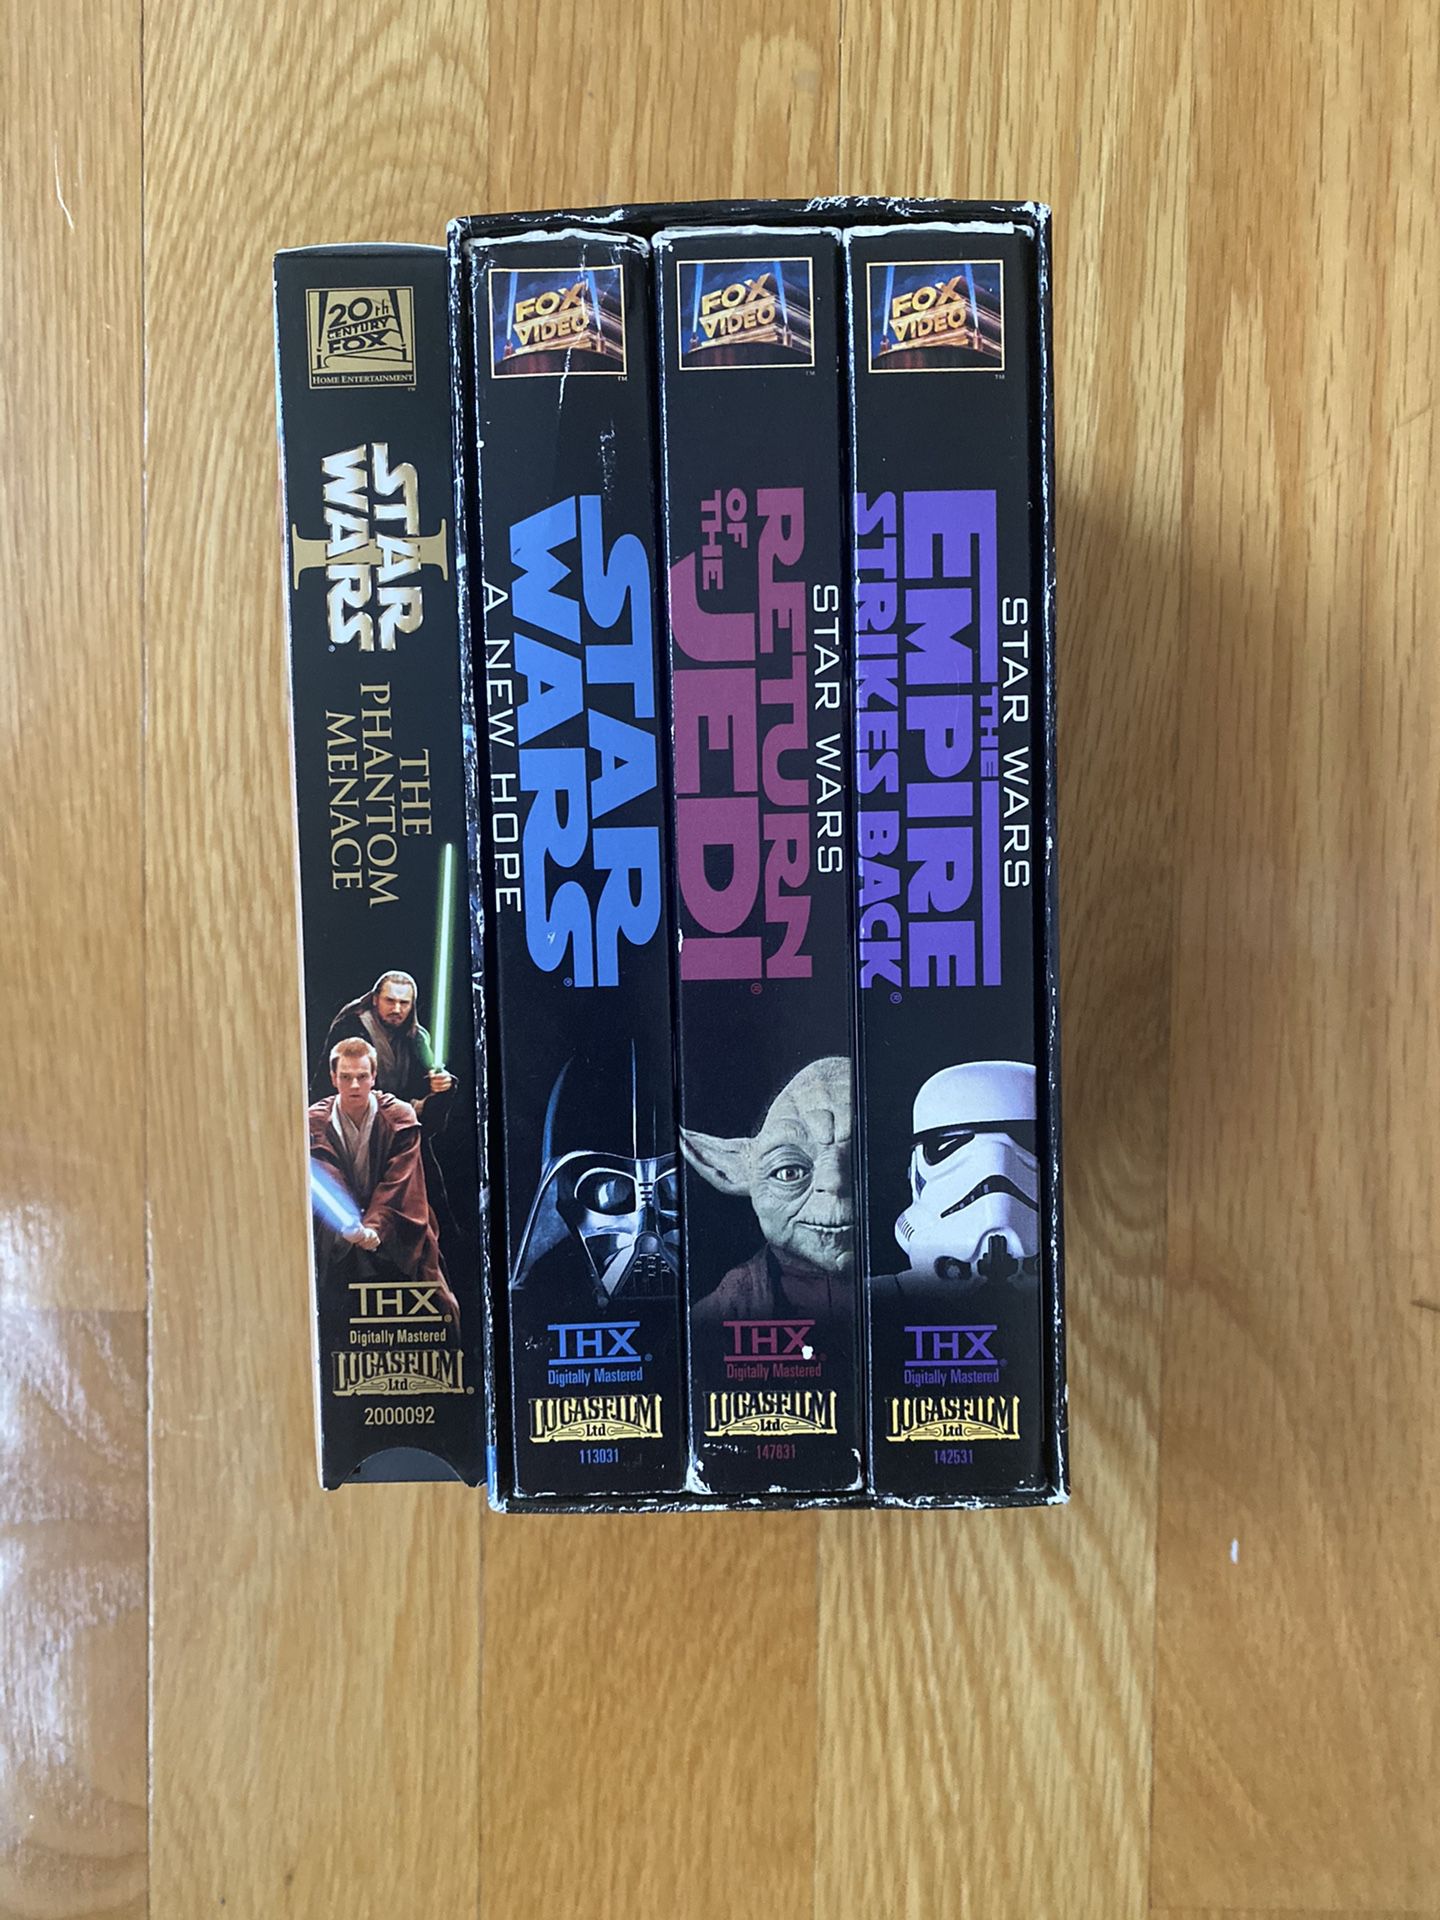 Star Wars dvd set